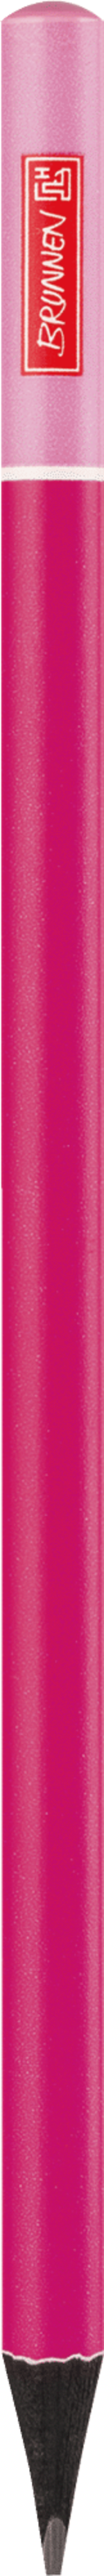 Bleistift Colour Code pink